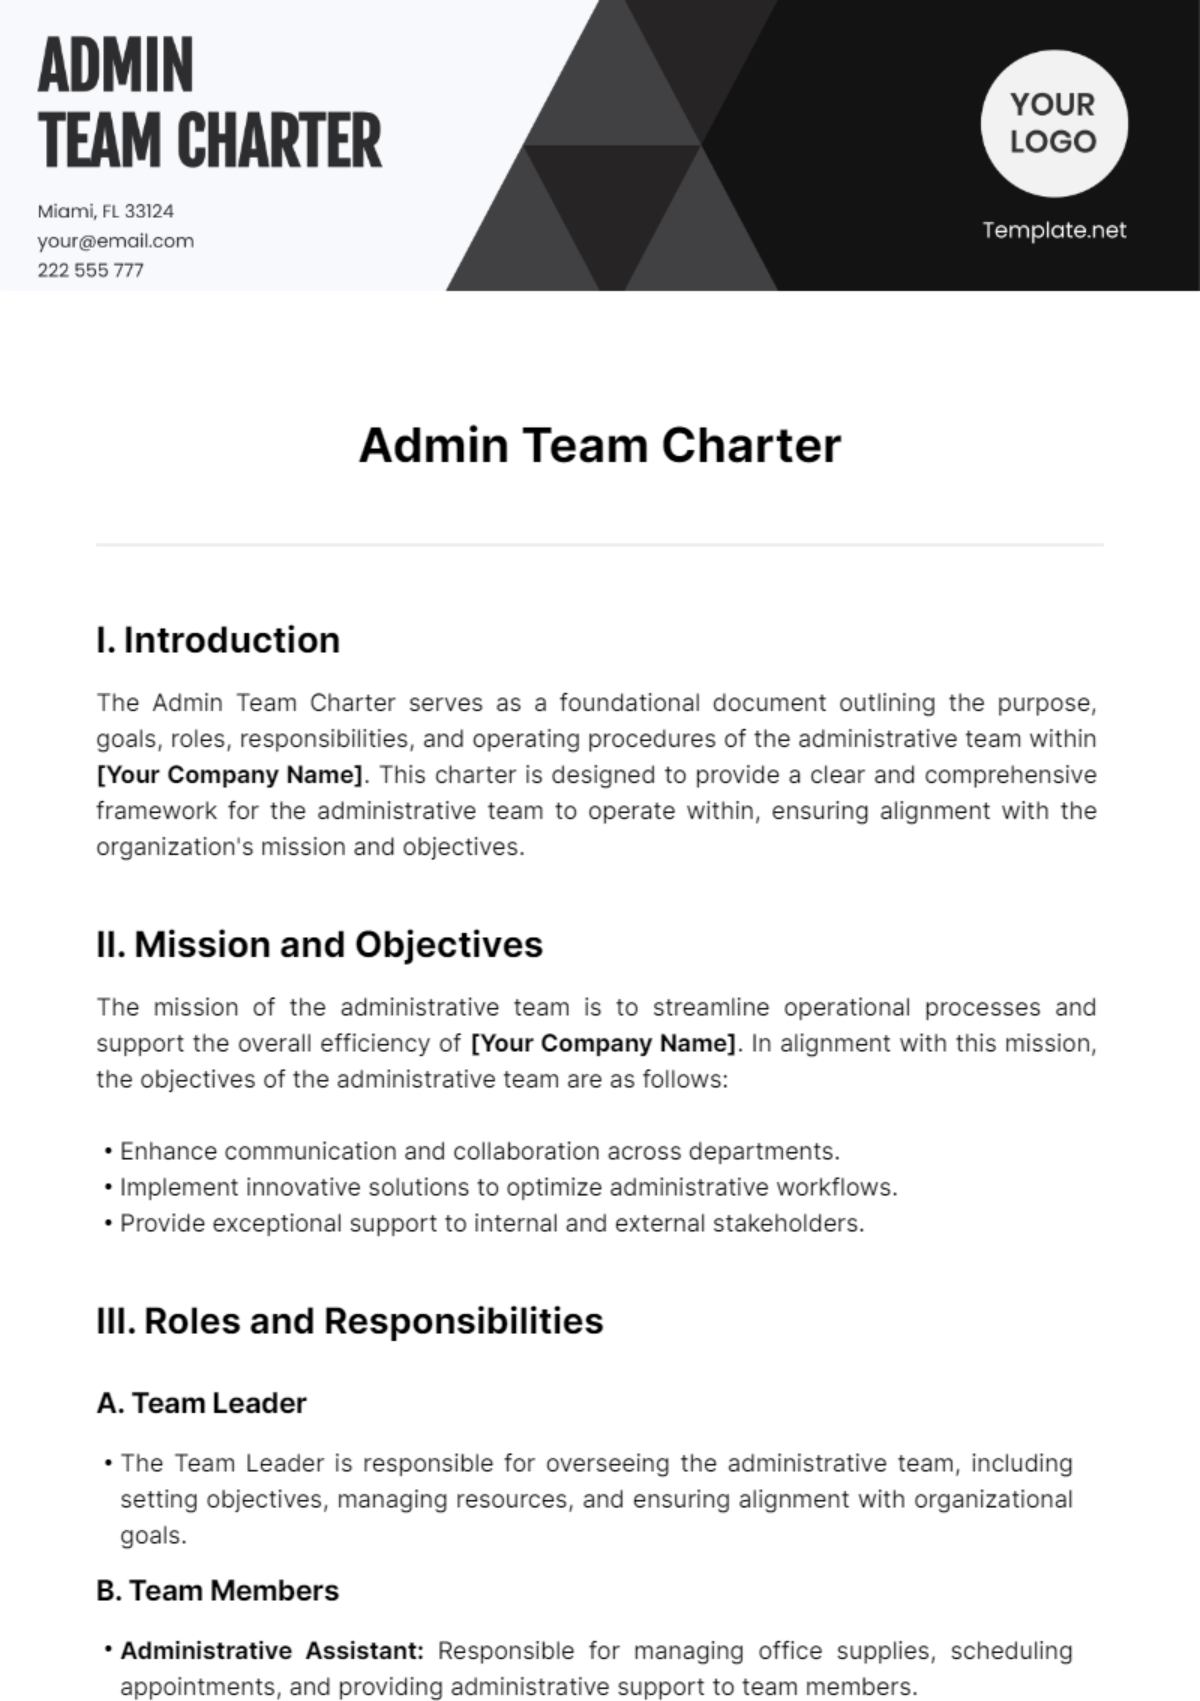 Admin Team Charter Template